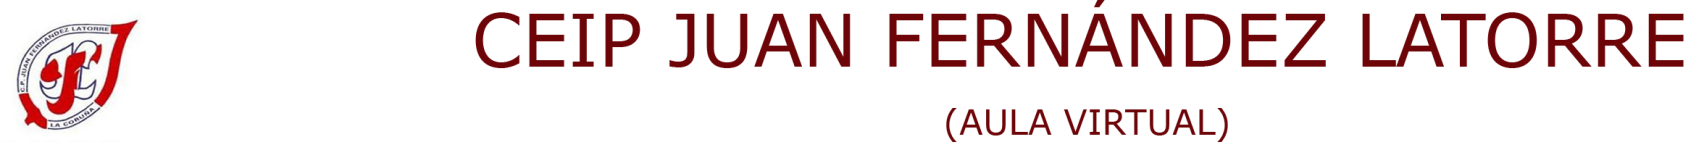 Logotipo de AV CEIP Juan Fernández Latorre